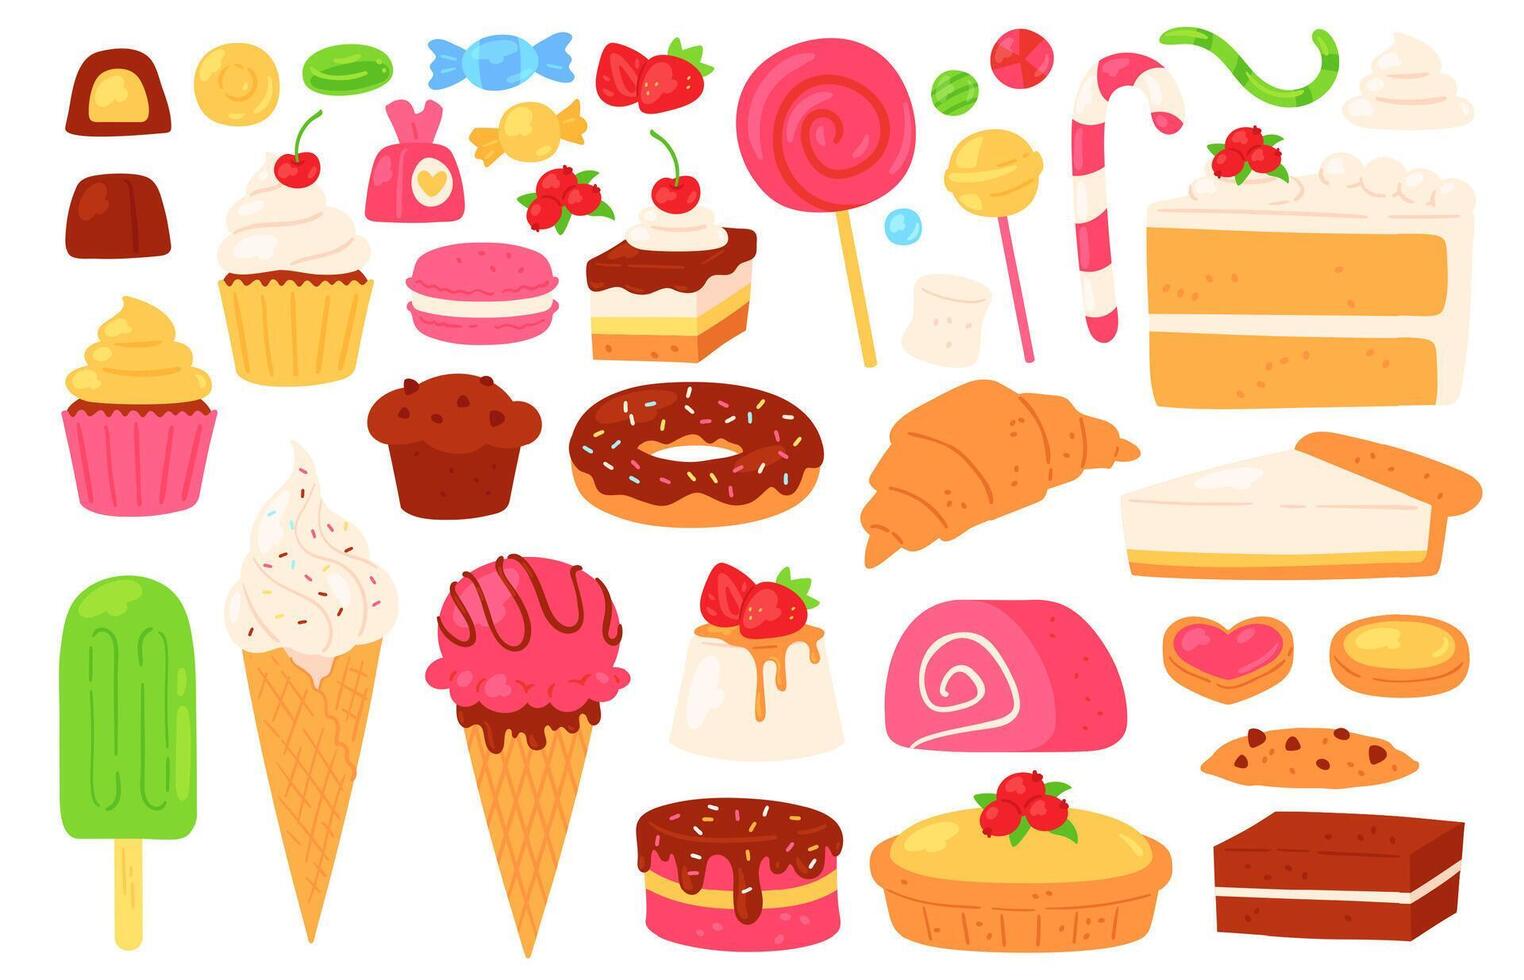 dibujos animados caramelo y dulces pastelitos, hielo crema, piruletas, chocolate y jalea dulces, galleta pasteles y pasteles confitería vector conjunto